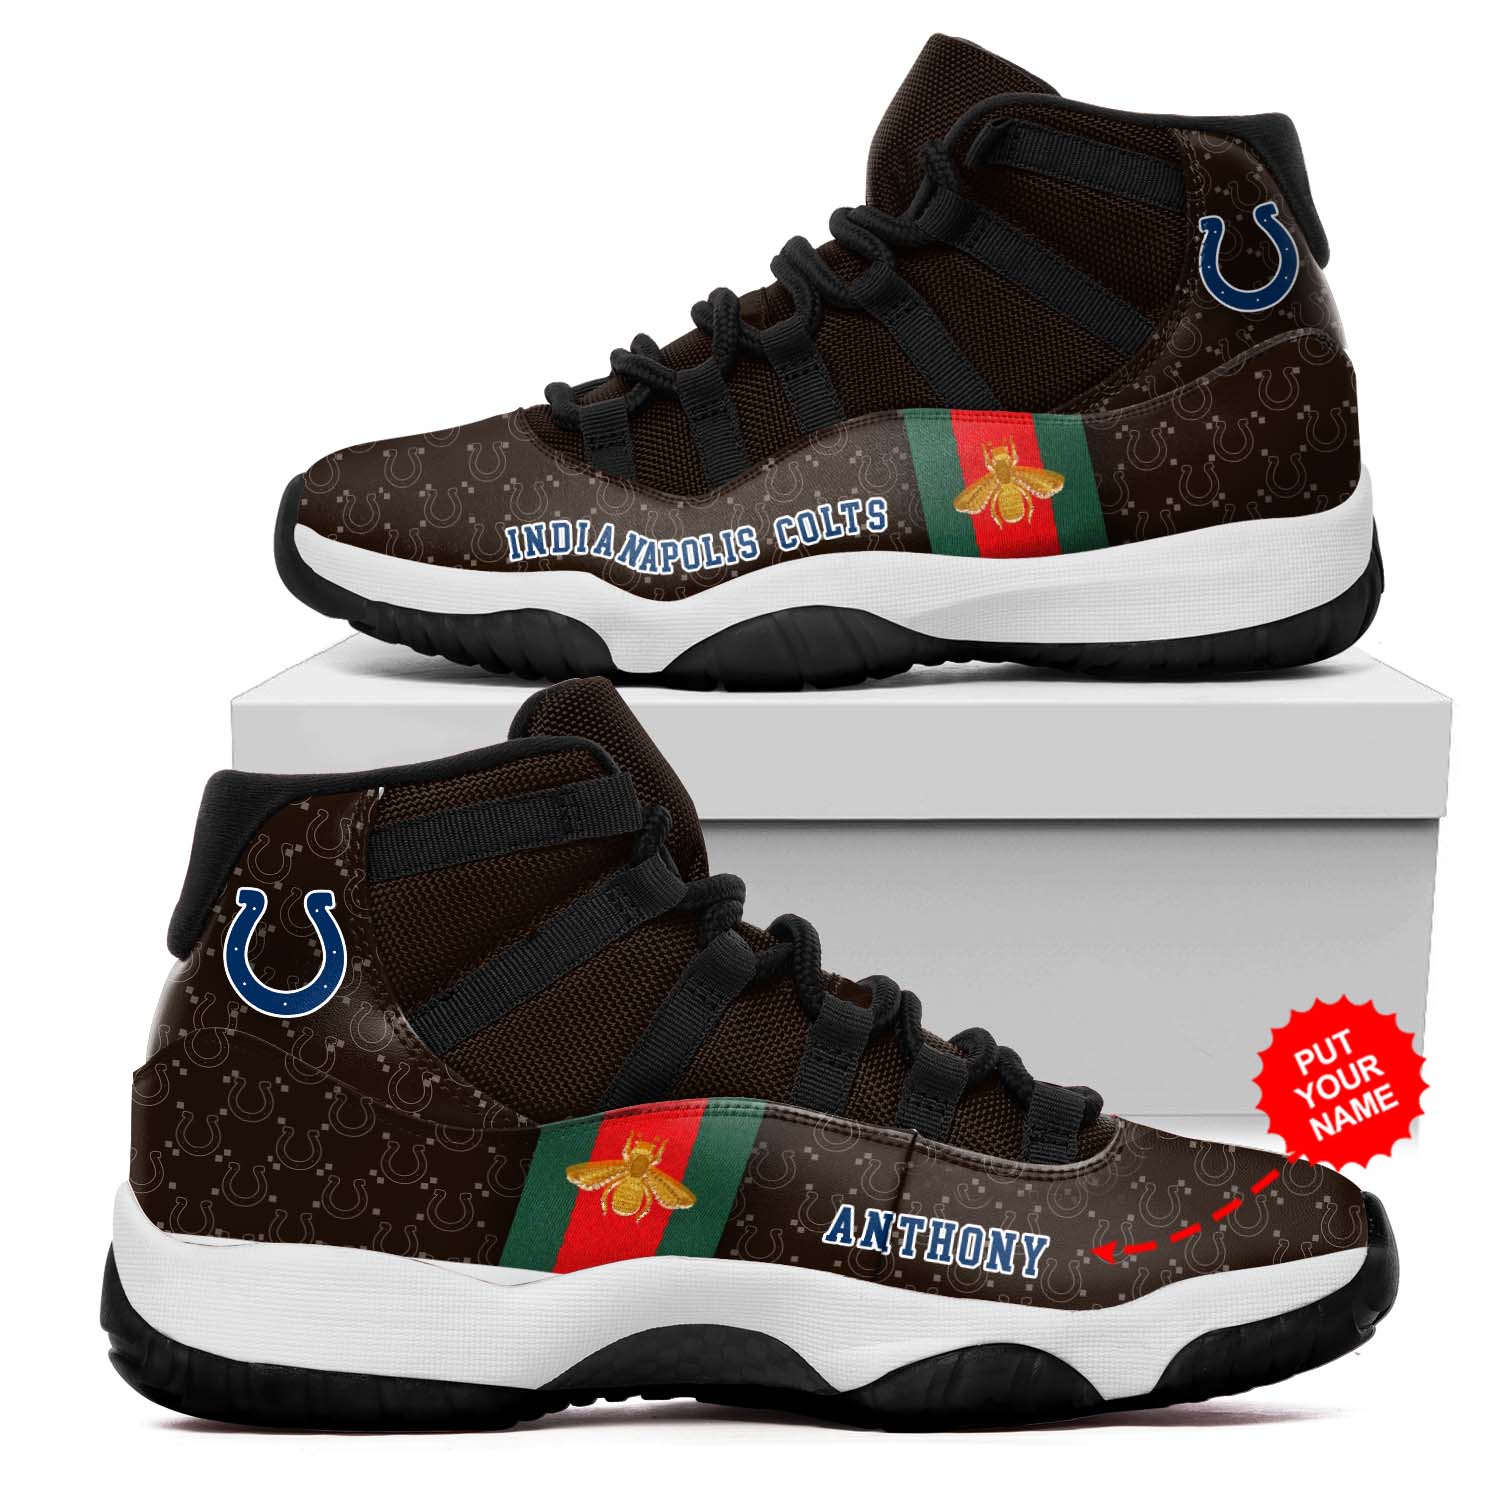 Indianapolis Colts NFL Gucci Air Jordan 11 Shoes